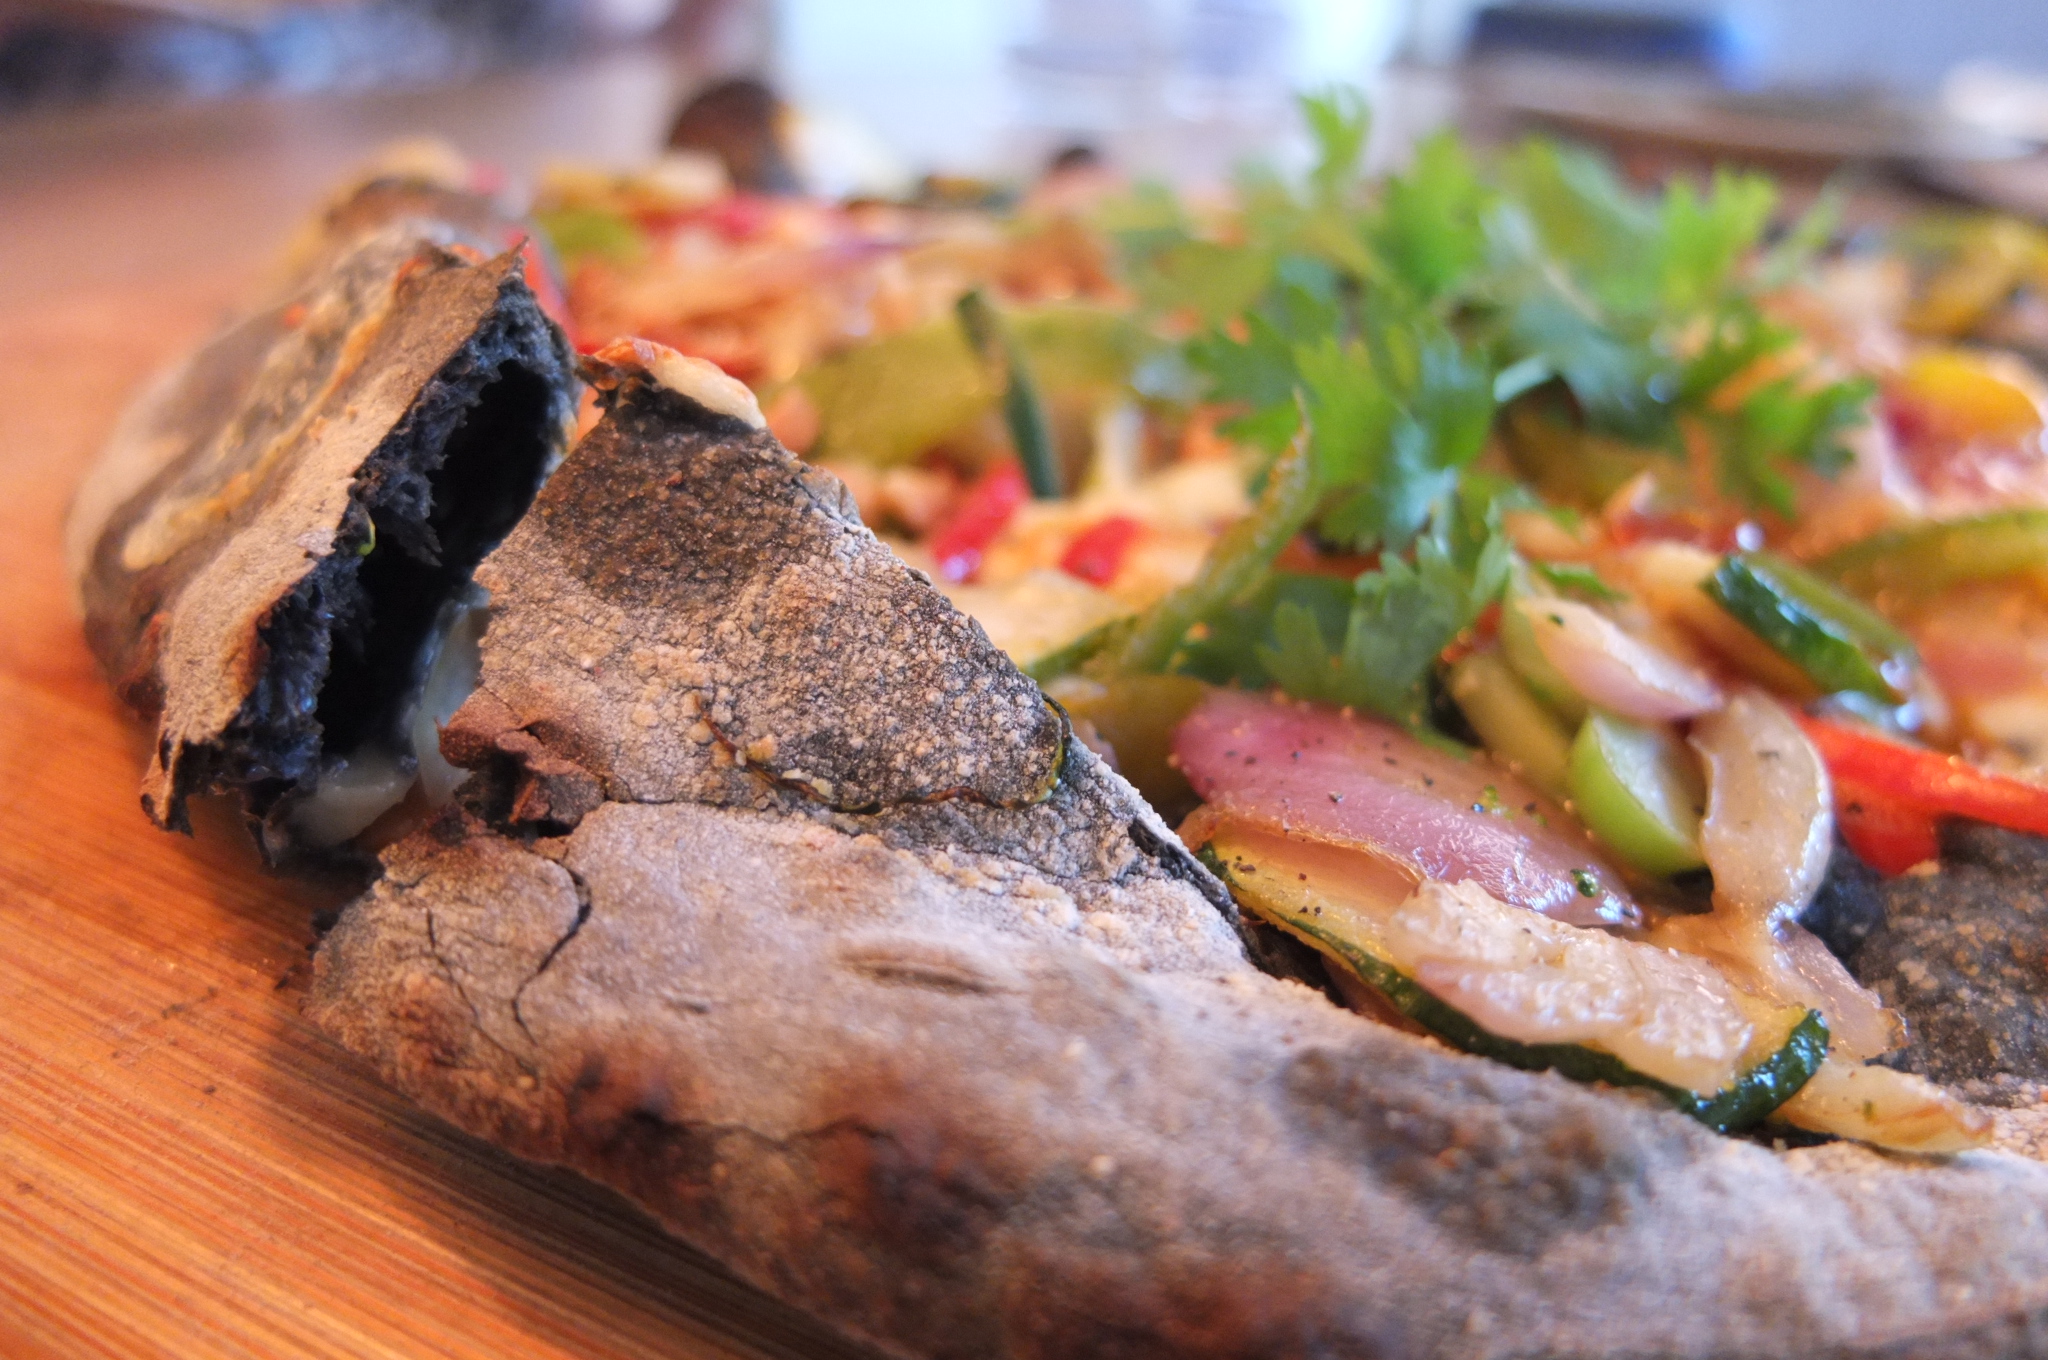 Pizza de carbón activado con vegetales, hecha al horno de leña / Foto: Godo Chillida para Los Foodistas©